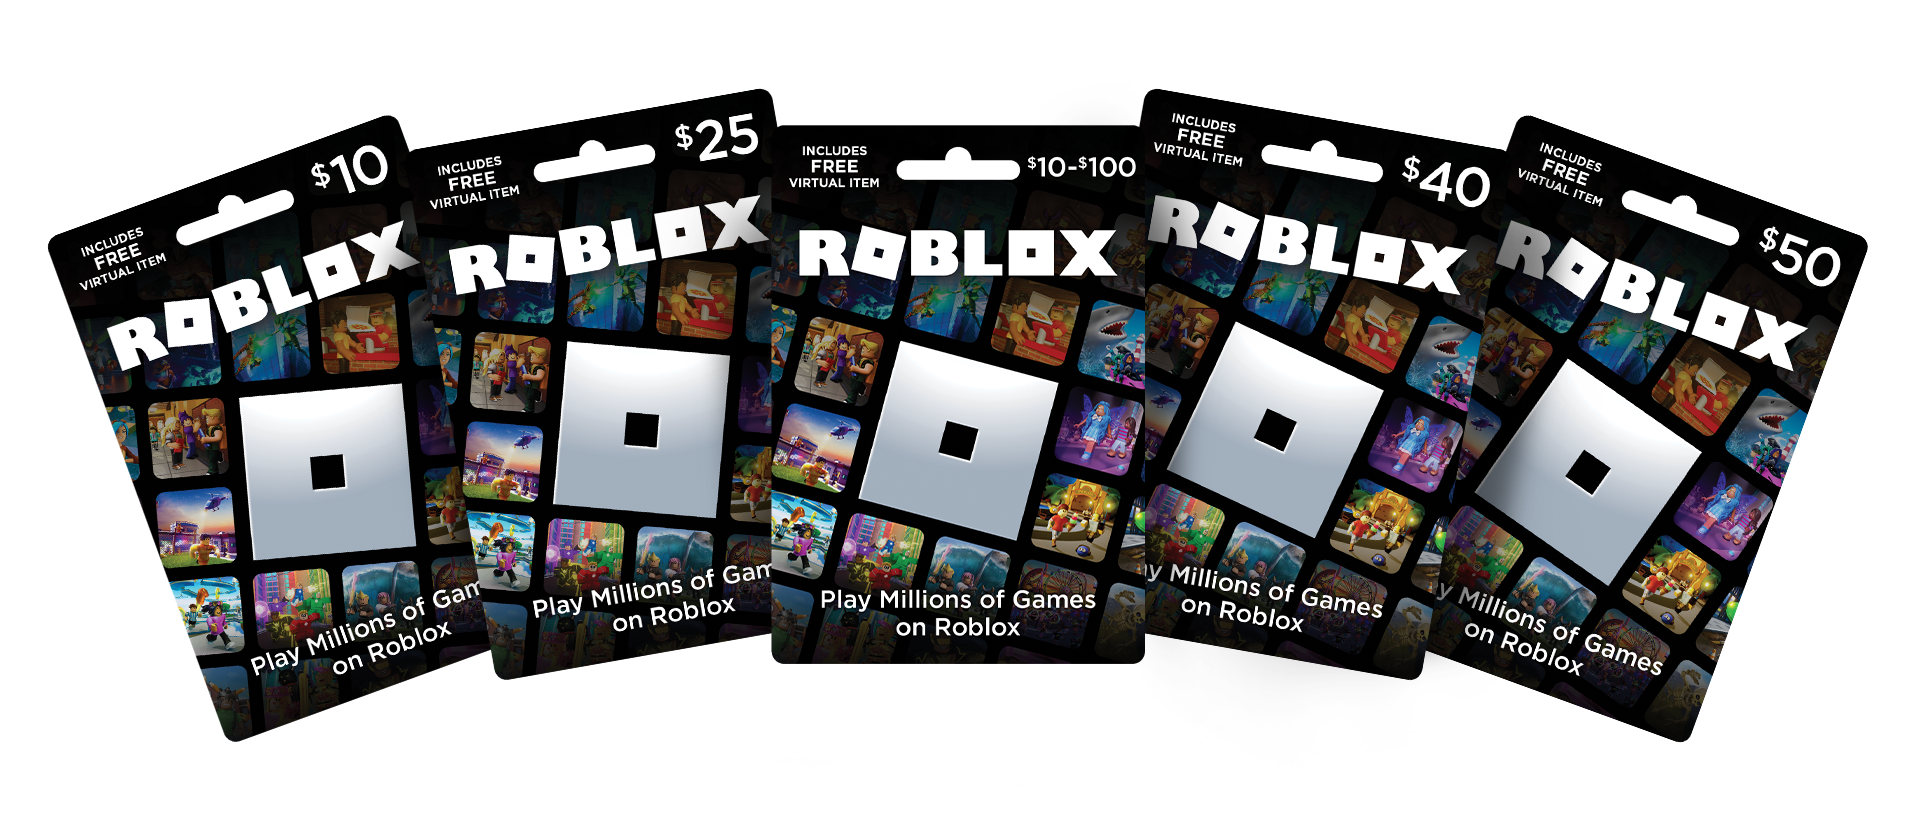 Numeros De Tarjetas De Roblox 2020